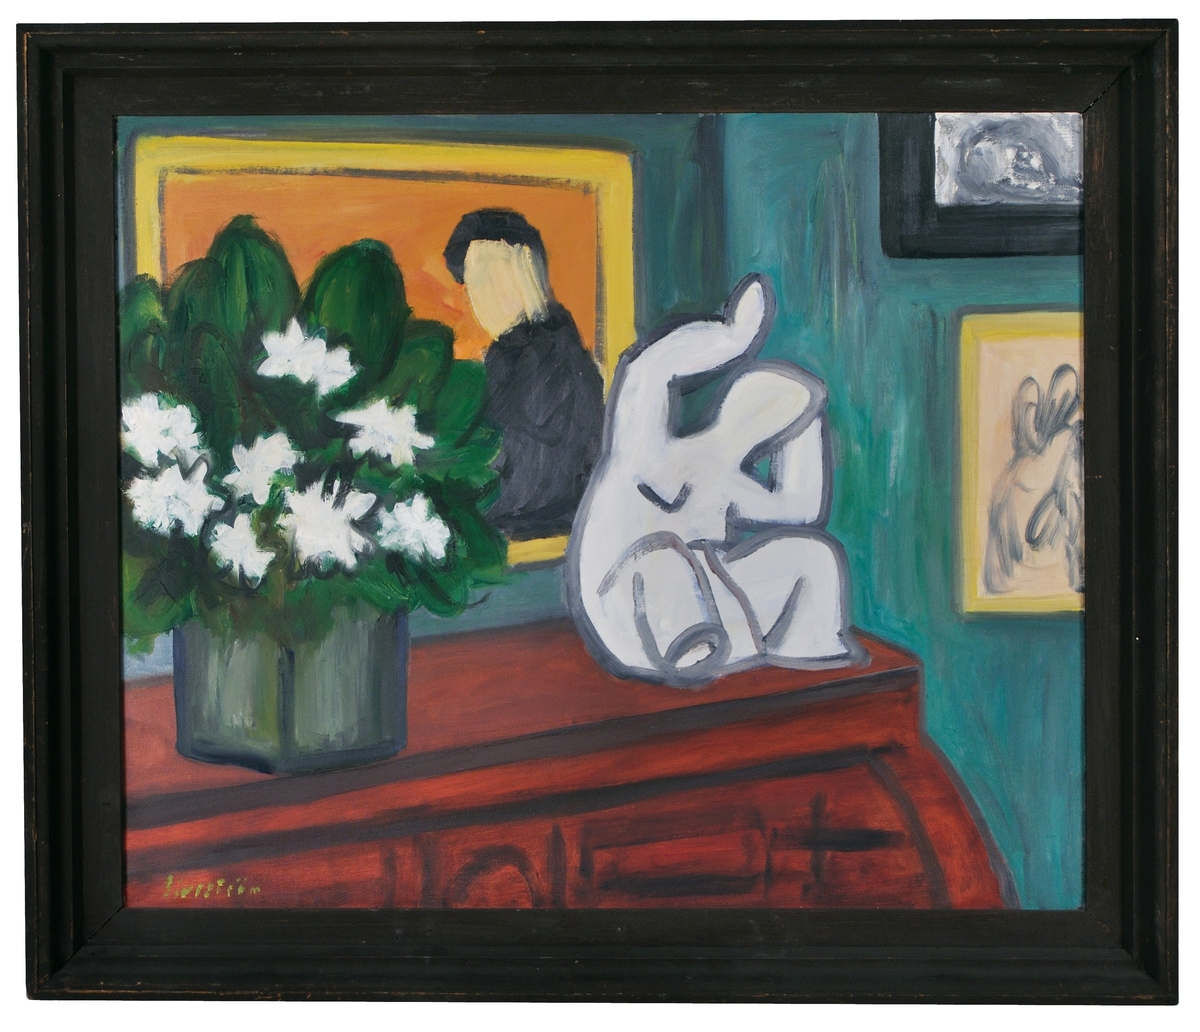 Oljemålning på duk "Jasminer och vit skulptur". Ett rum med byrå, på vilken står en vas med vita jasminer samt en vit skulptur (sittande människa), rummets vägg grön med tre målningar.